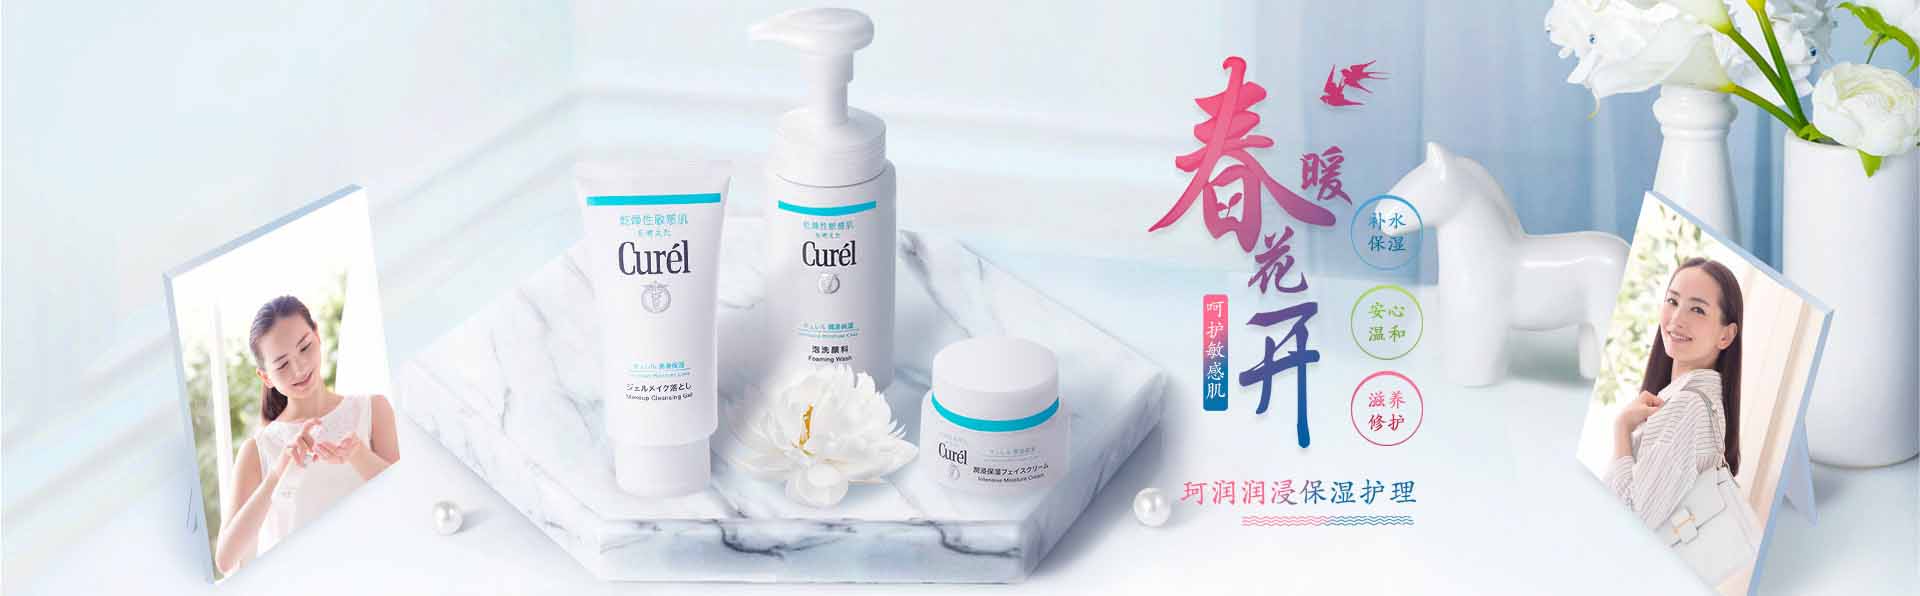 珂润_化妆护肤品成分介绍_Curel是哪个国家的品牌_是什么牌子